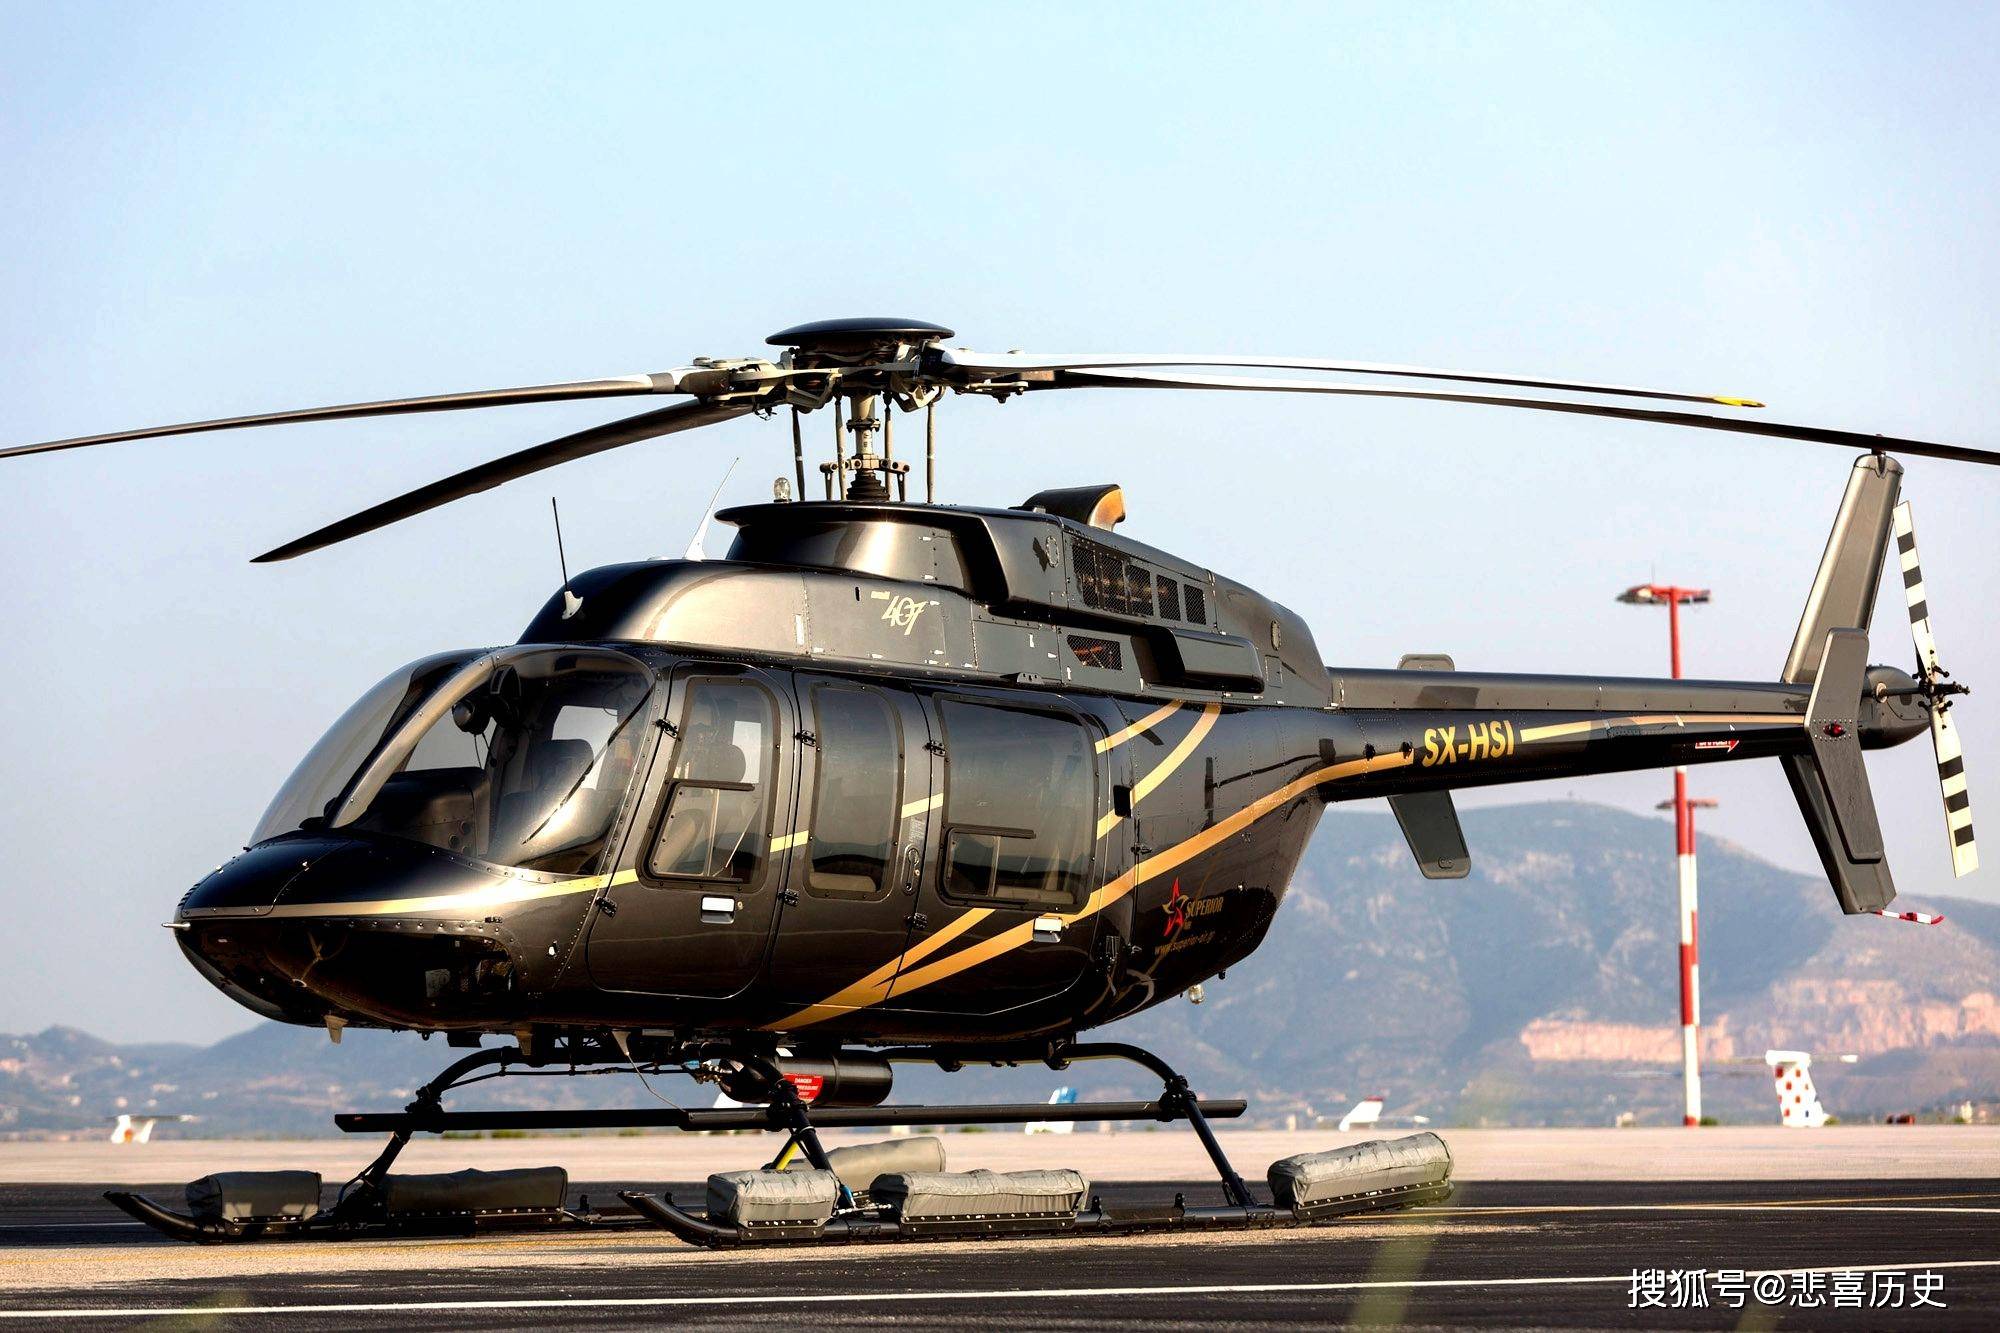 原创贝尔407轻型直升机